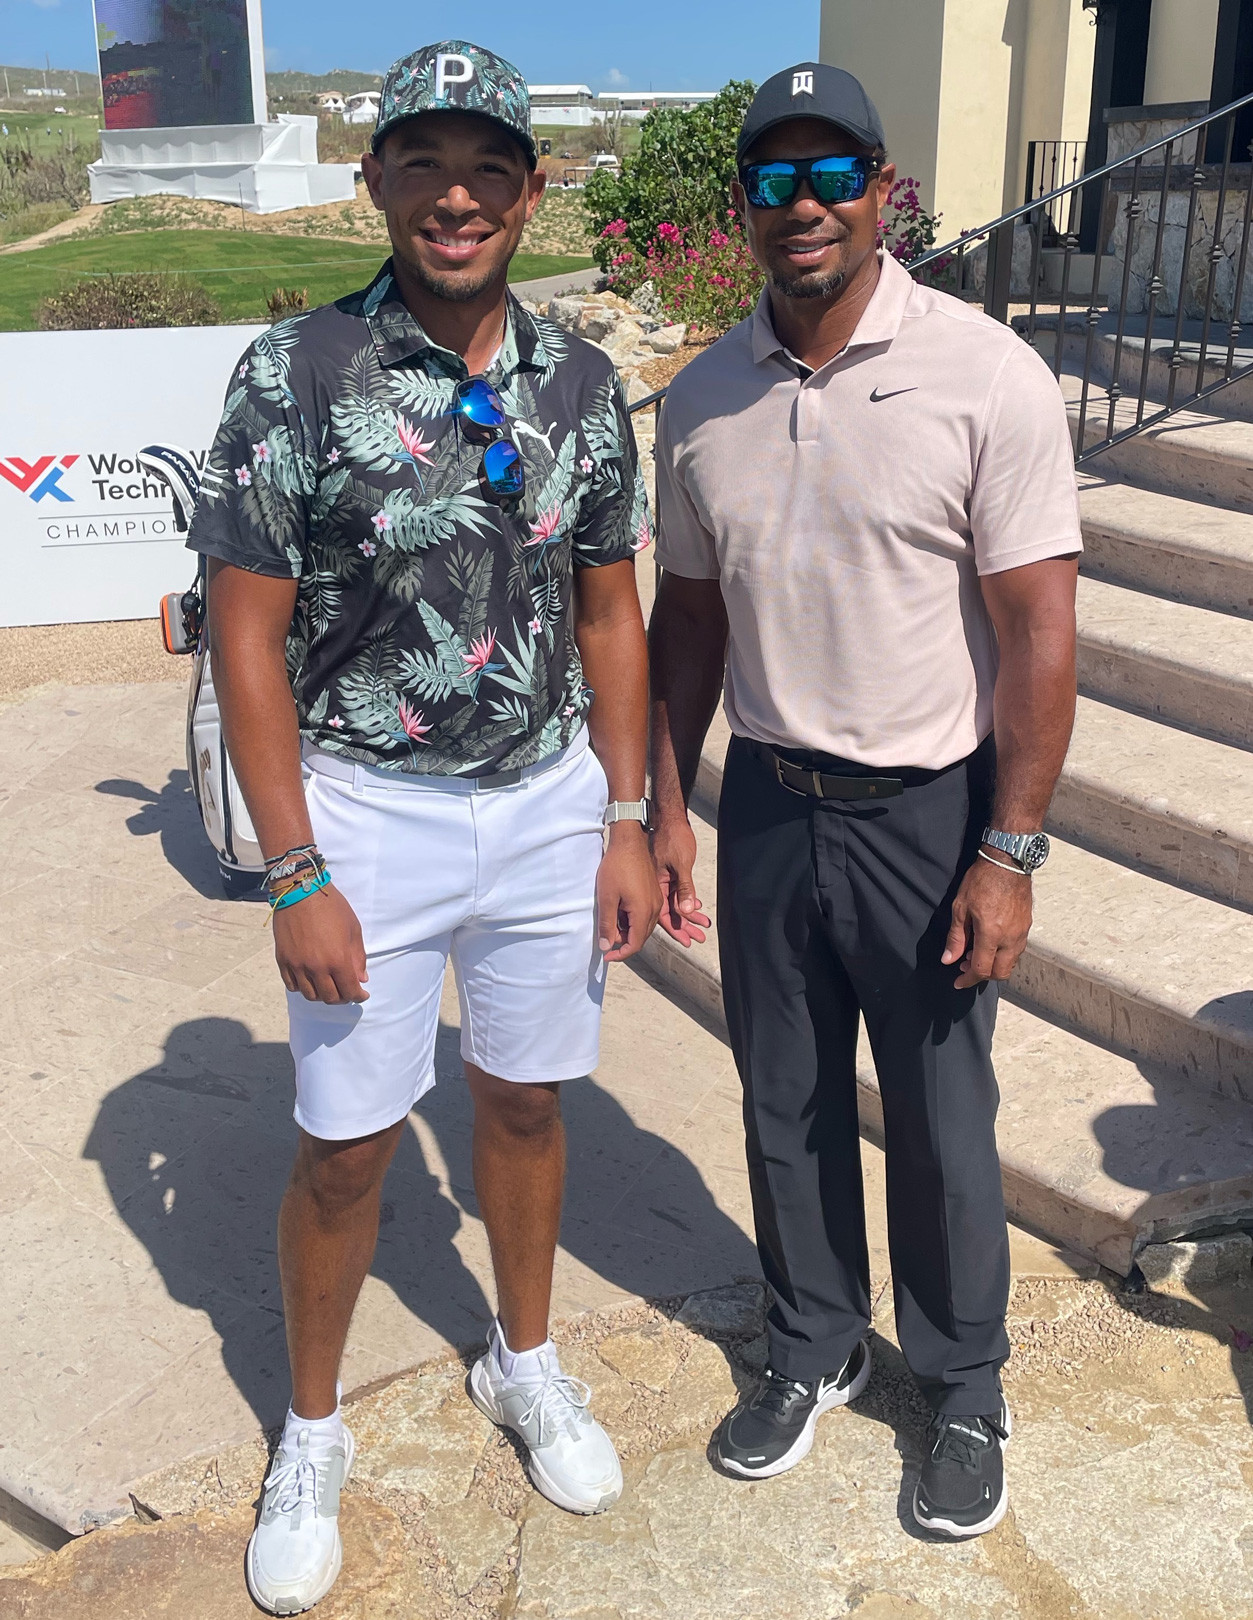 Tiger Woods: Từ golf thật đến golf ảo